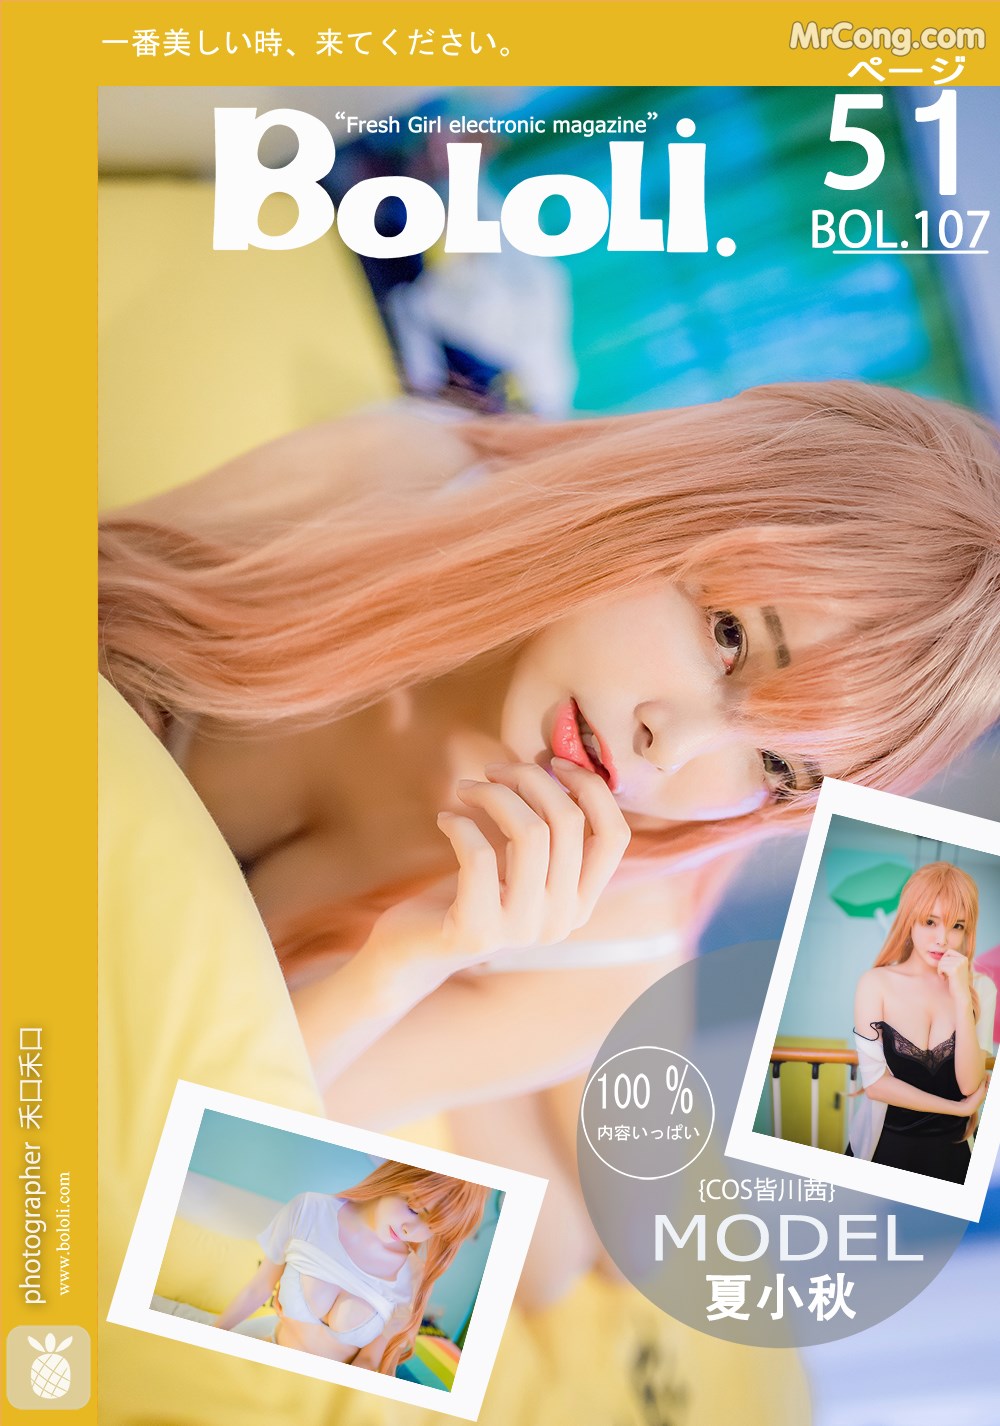 BoLoli 2017-08-16 Vol.107: Model Xia Xiao Qiu Qiu Qiu (夏小秋 秋秋) (52 photos)